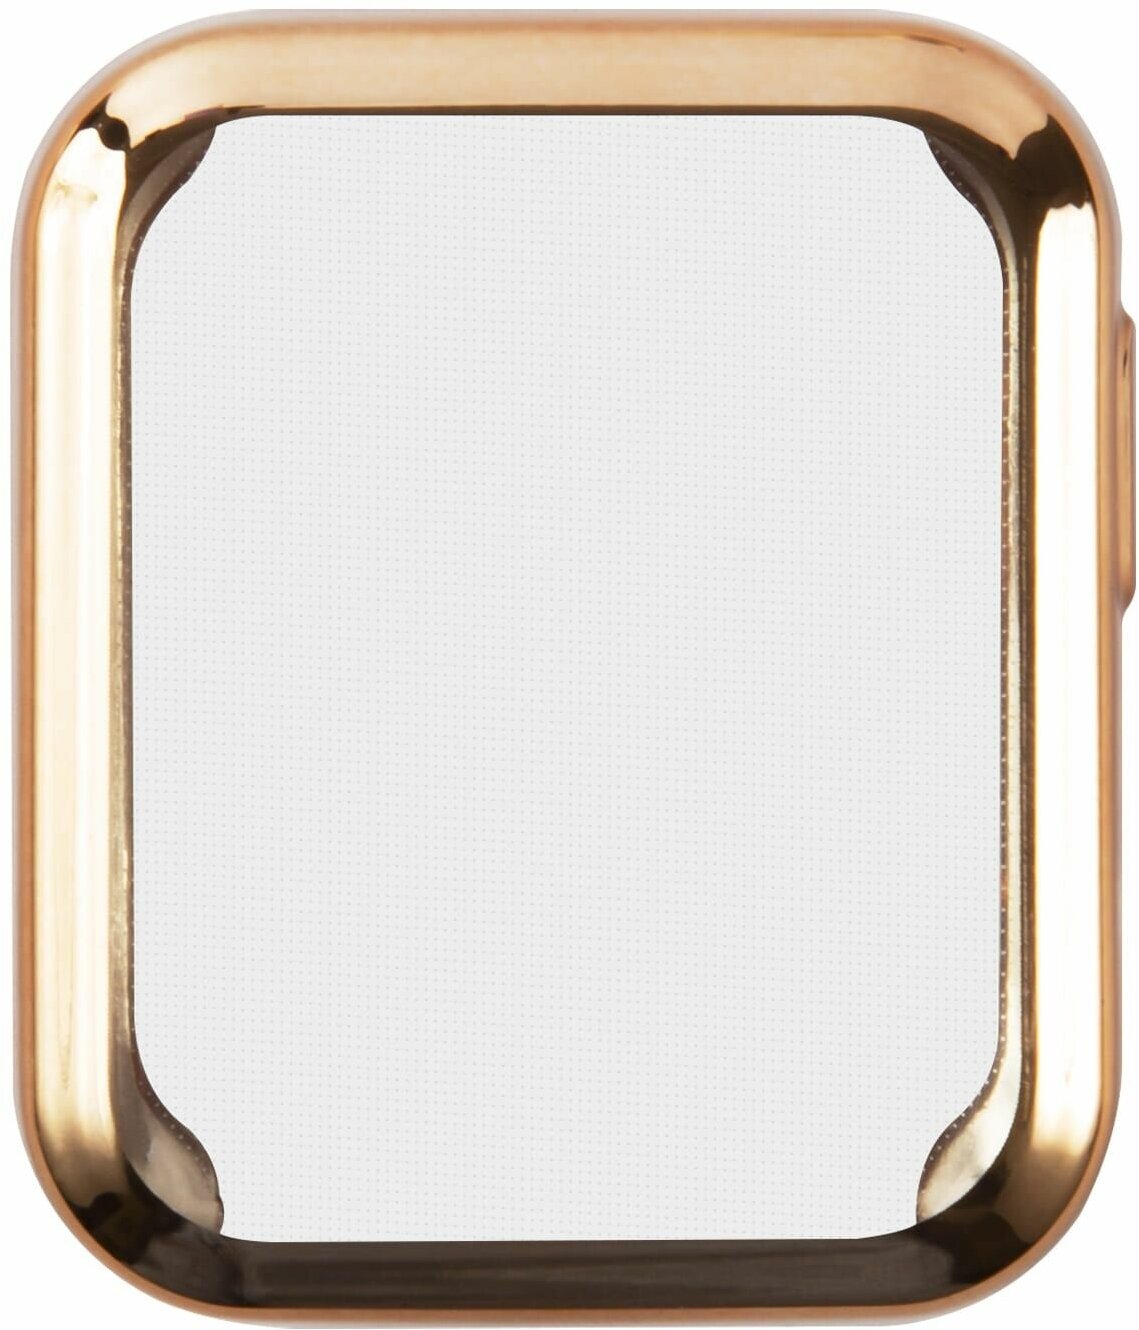 Защитное стекло с цветным бампером для Xiaomi Mi Watch Lite/Защита от царапин для смарт часов/Стекло/Защитный экран для Ксиаоми Ми вотч Лайт золотой